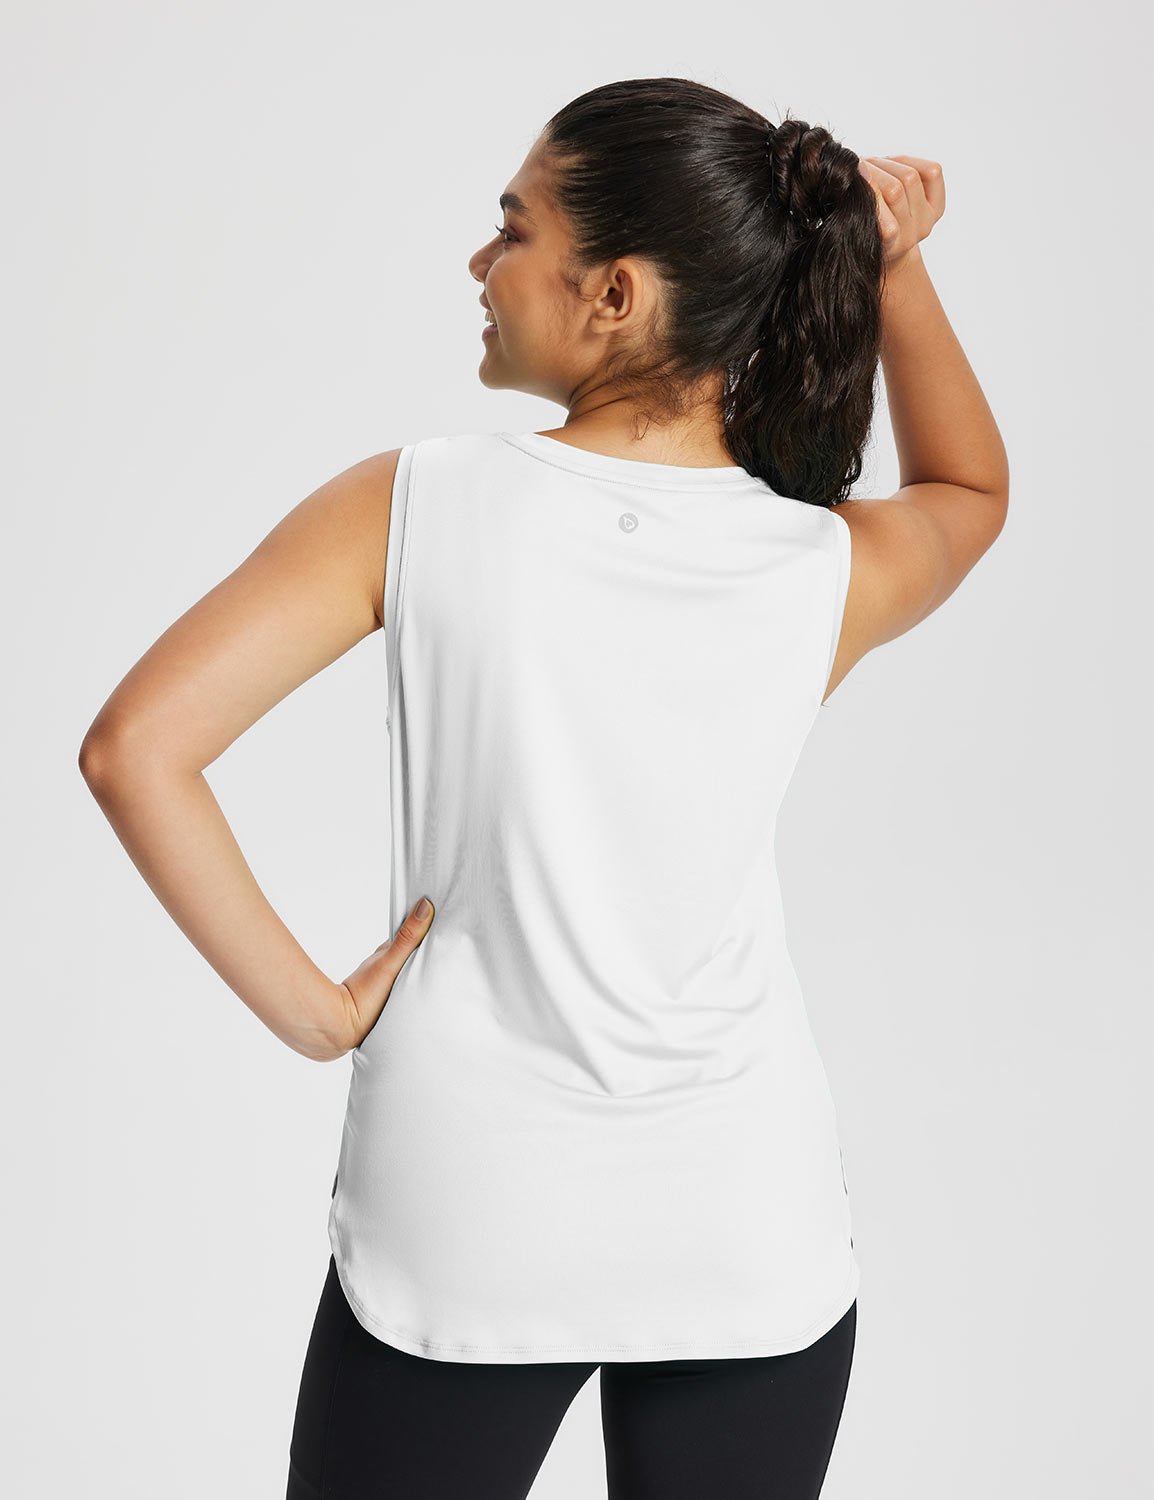 Baleaf Women's High Neck Side Slit Workout Tank Top Lucent White Back